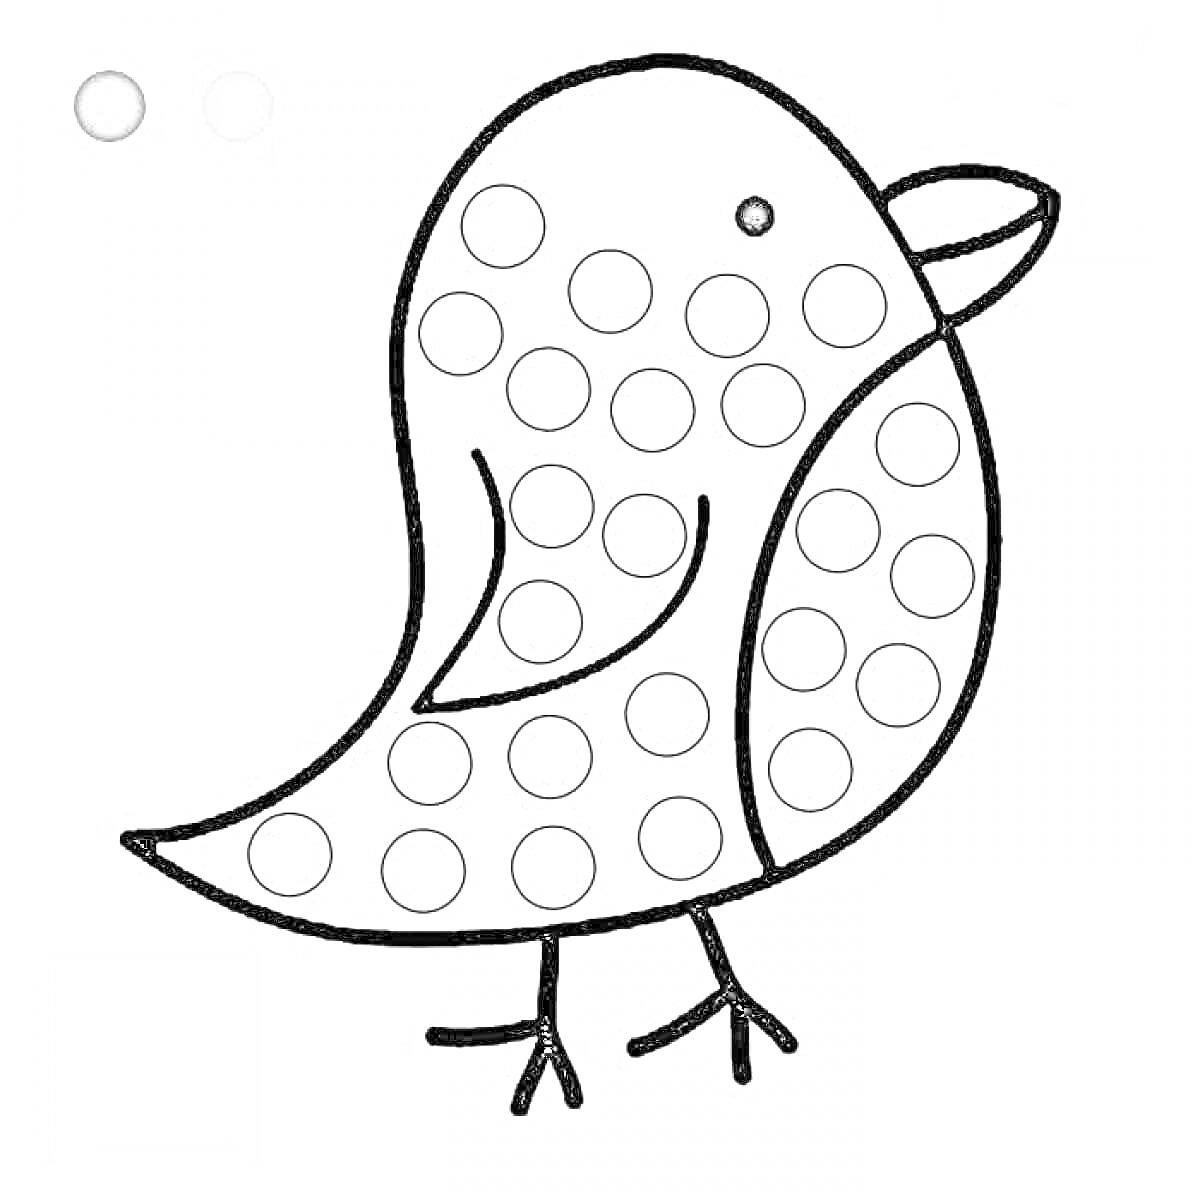 Раскраска Птичка с точками для раскрашивания пальчиками